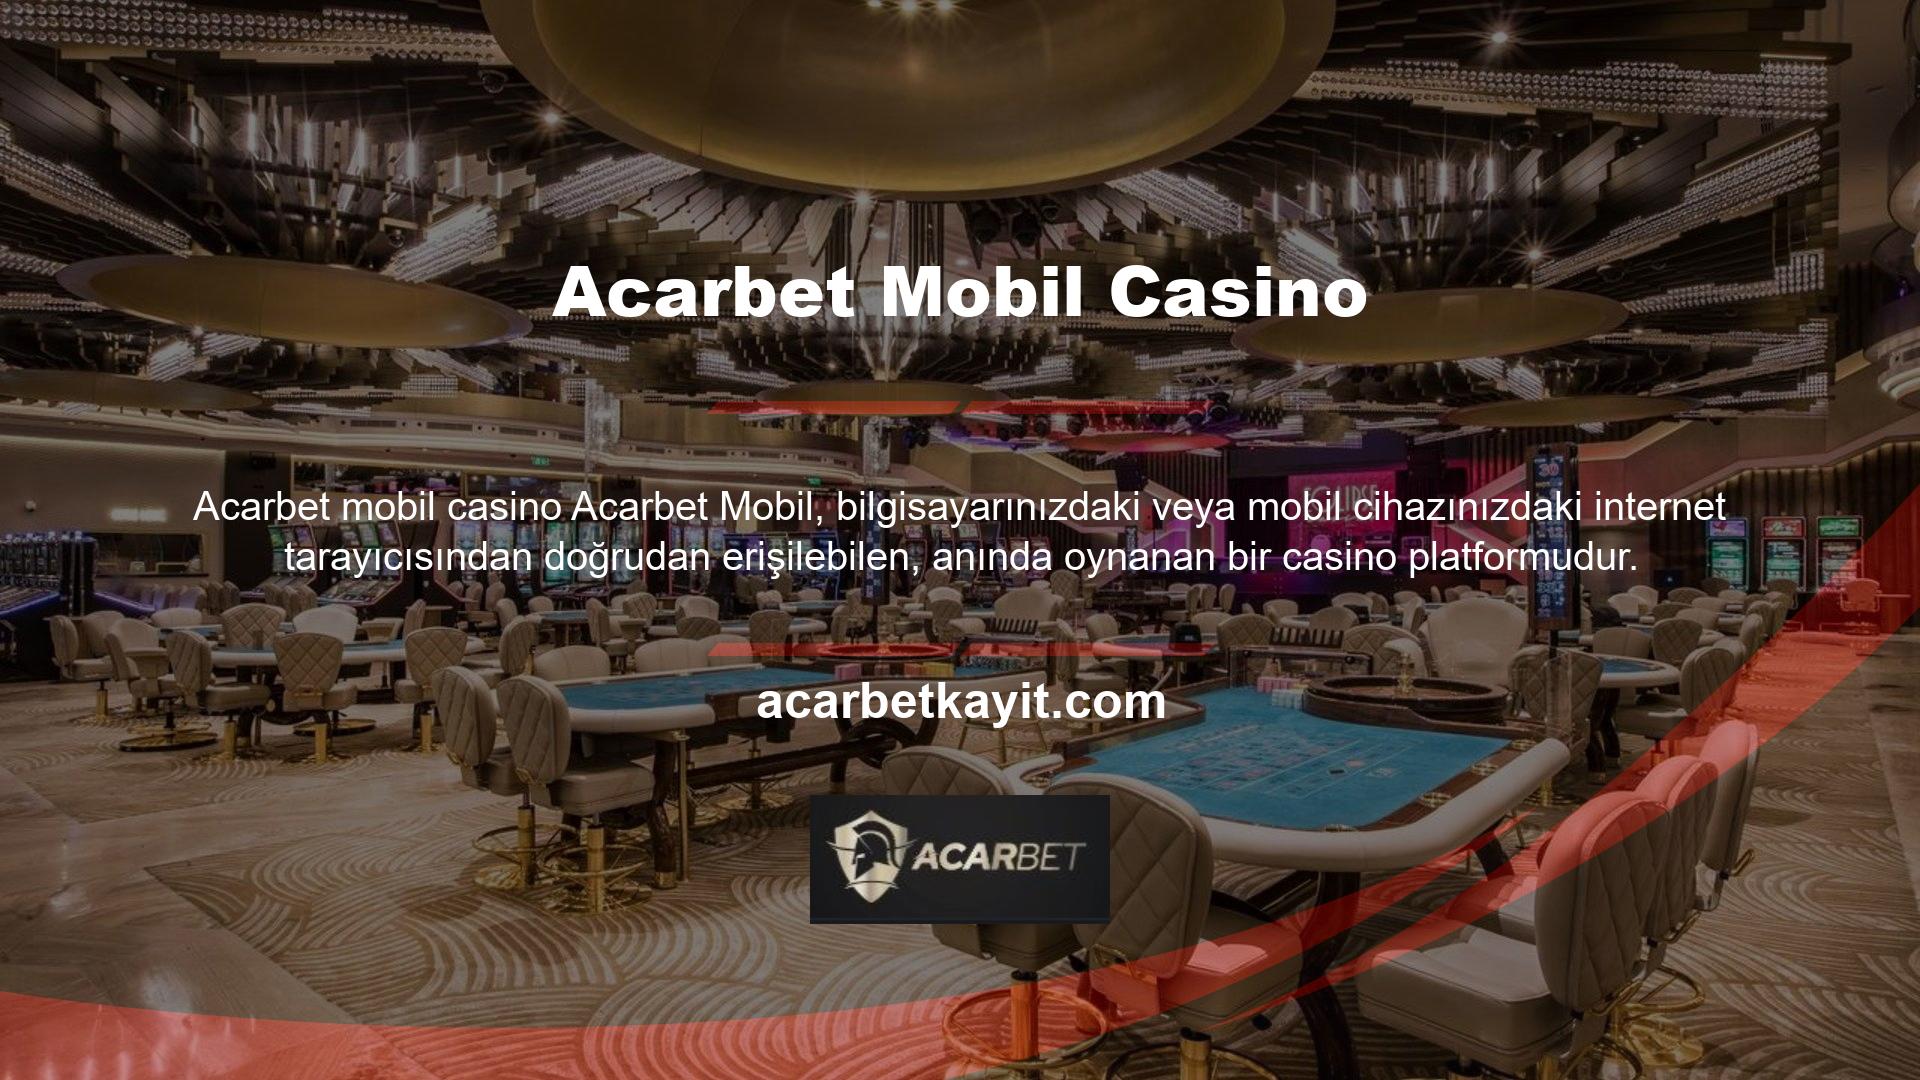 Tarayıcı tabanlı mobil casino, güzel bir tasarıma, kullanıcı dostu bir arayüze ve mükemmel navigasyona sahiptir